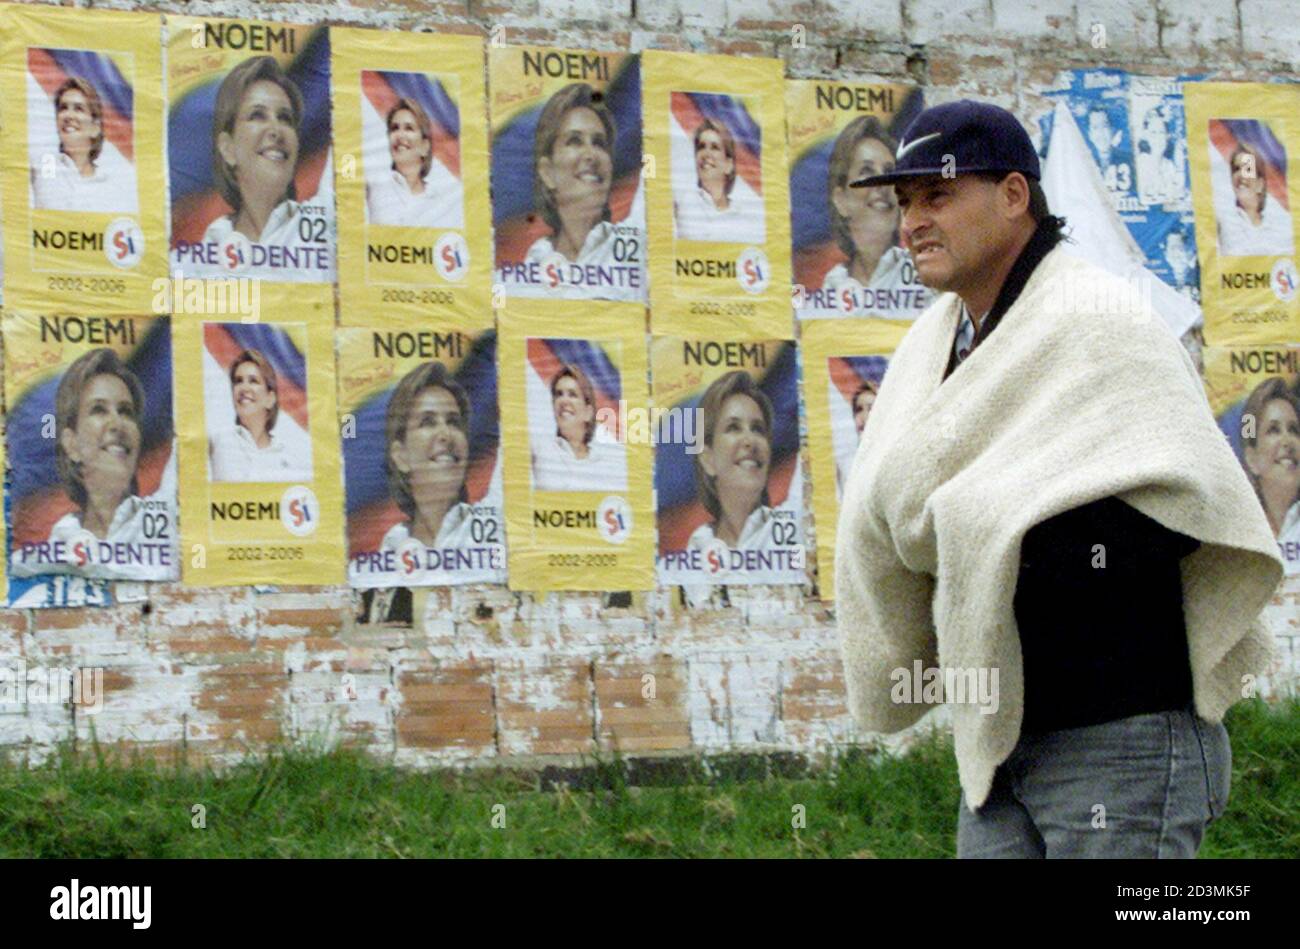 Un campesino colombiano camina junto a un muro con banderas de la candidata presidencial colombiana Noemi Sanin en guasca, cerca de Bogotá, 21 de mayo de 2002. Las elecciones presidenciales colombianas se celebrarán el 26 de mayo. REUTERS/Eliana Aponte EA/MMR Foto de stock